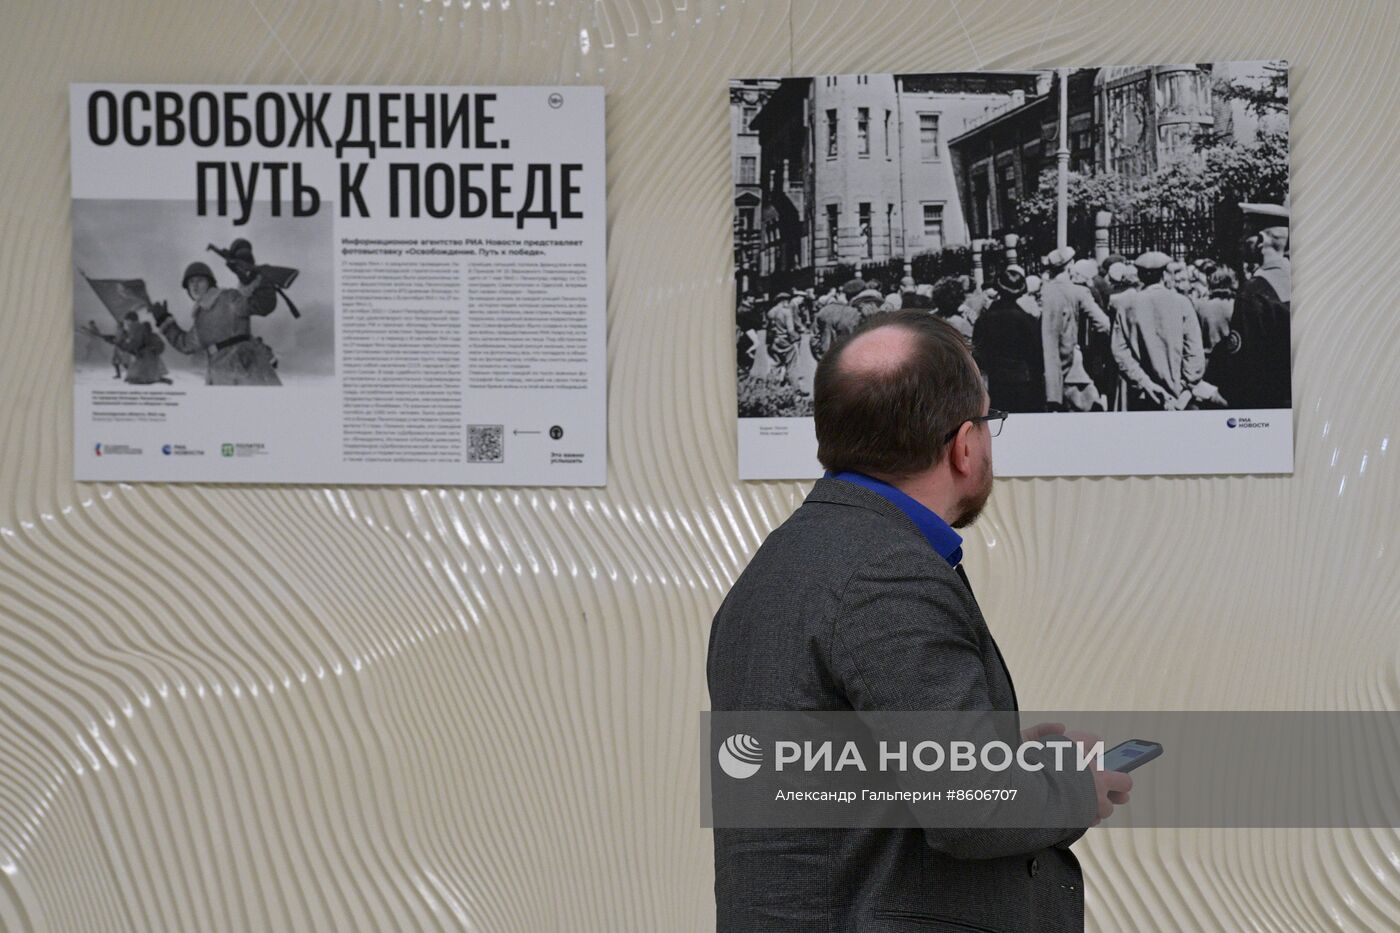 Выставка "Освобождение. Путь к Победе" в Санкт-Петербурге